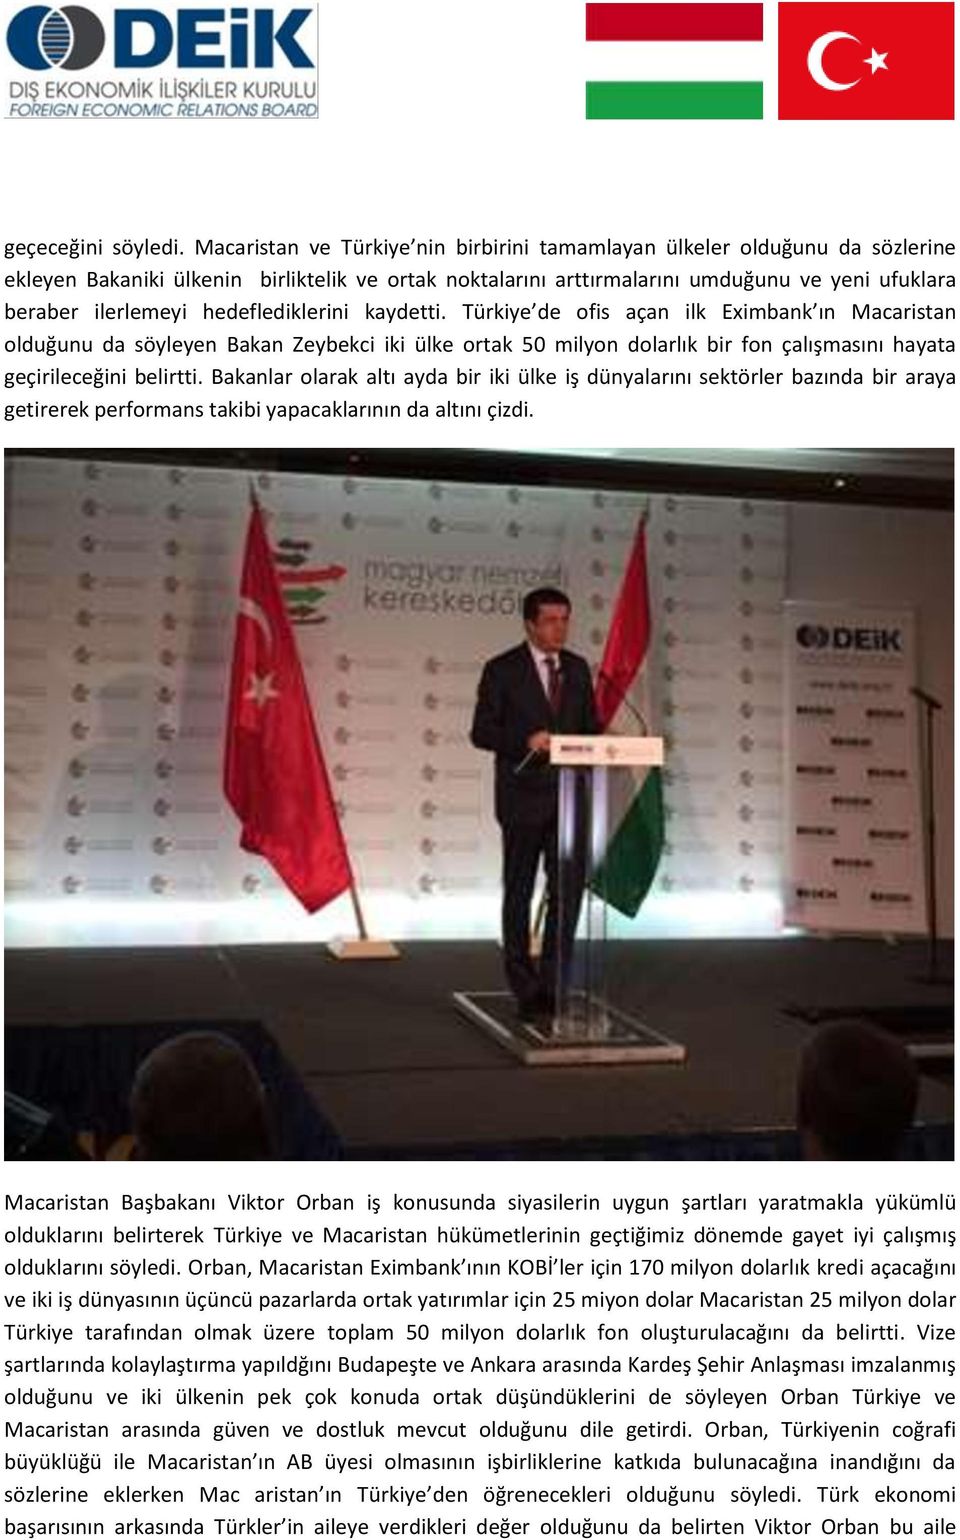 hedeflediklerini kaydetti. Türkiye de ofis açan ilk Eximbank ın Macaristan olduğunu da söyleyen Bakan Zeybekci iki ülke ortak 50 milyon dolarlık bir fon çalışmasını hayata geçirileceğini belirtti.